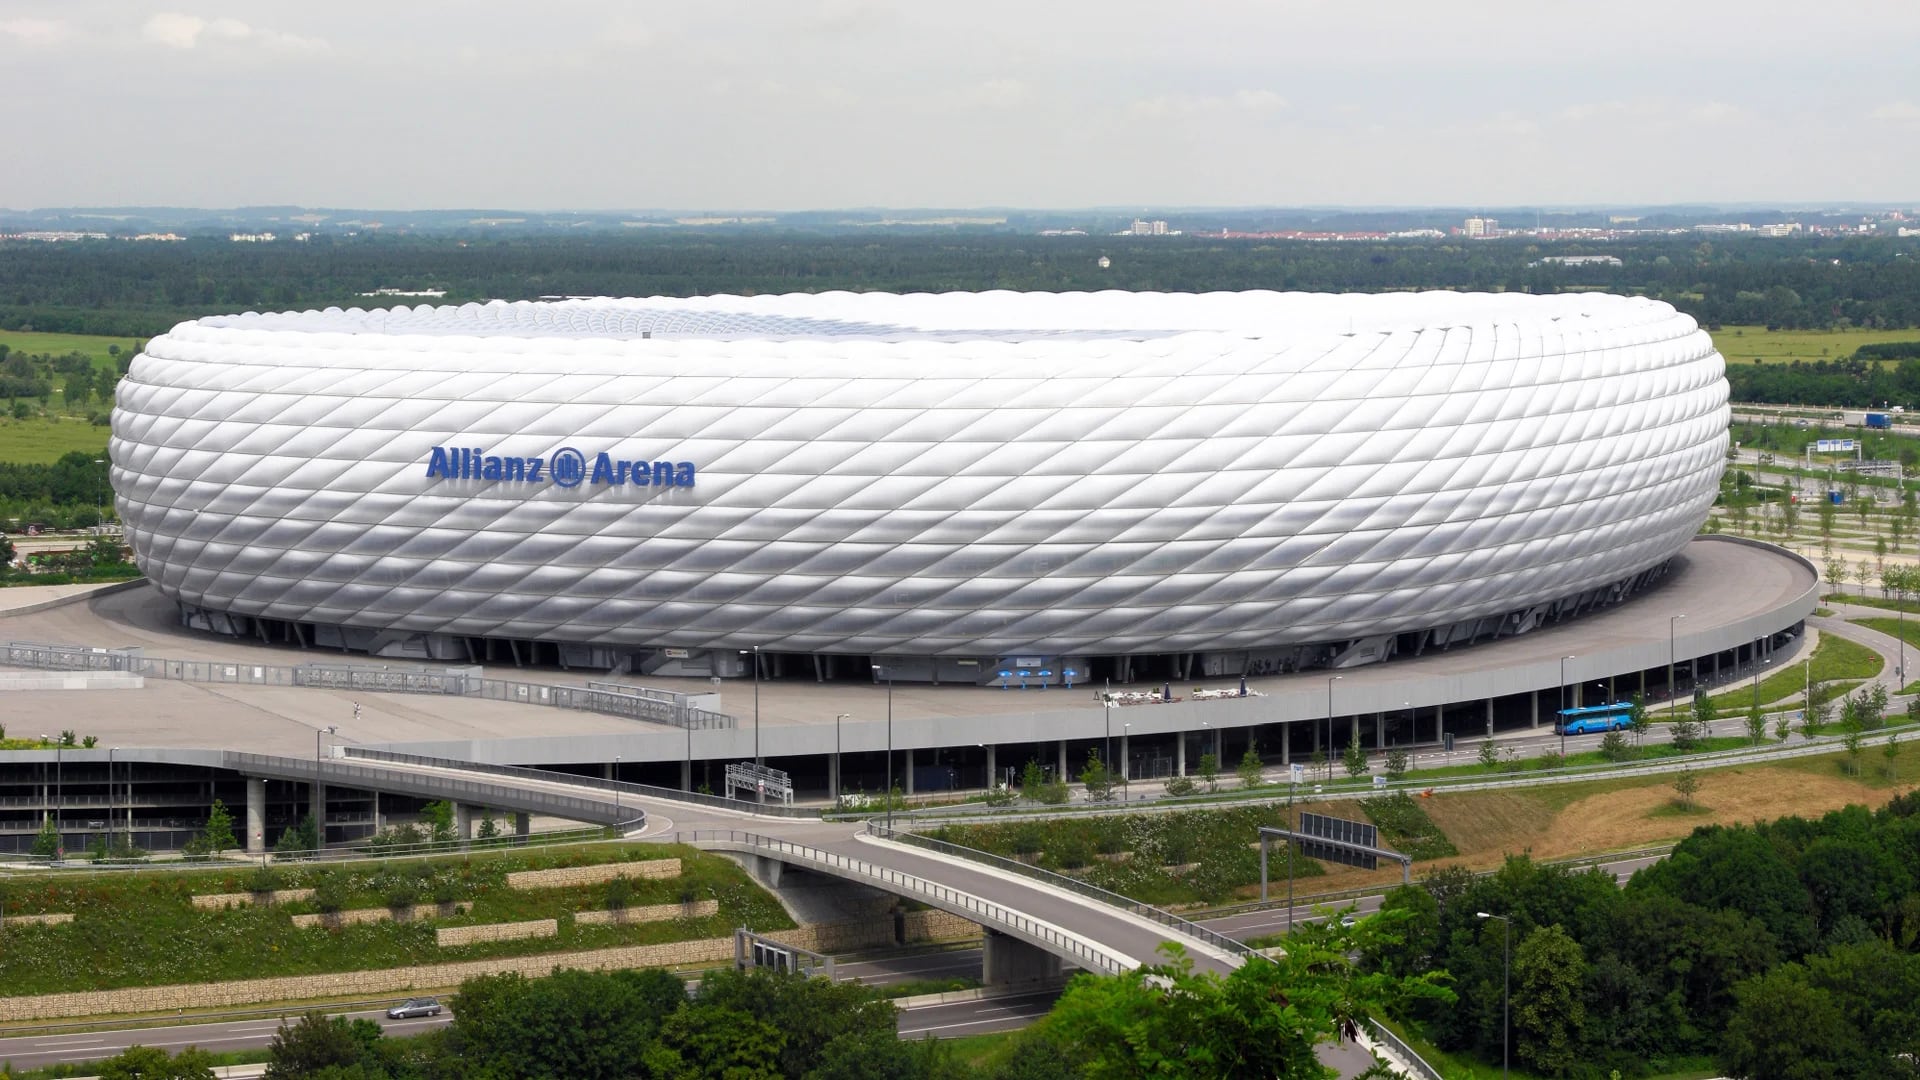 El Allianz Arena de Alemania tiene una capacidad para 75.000 espectadores